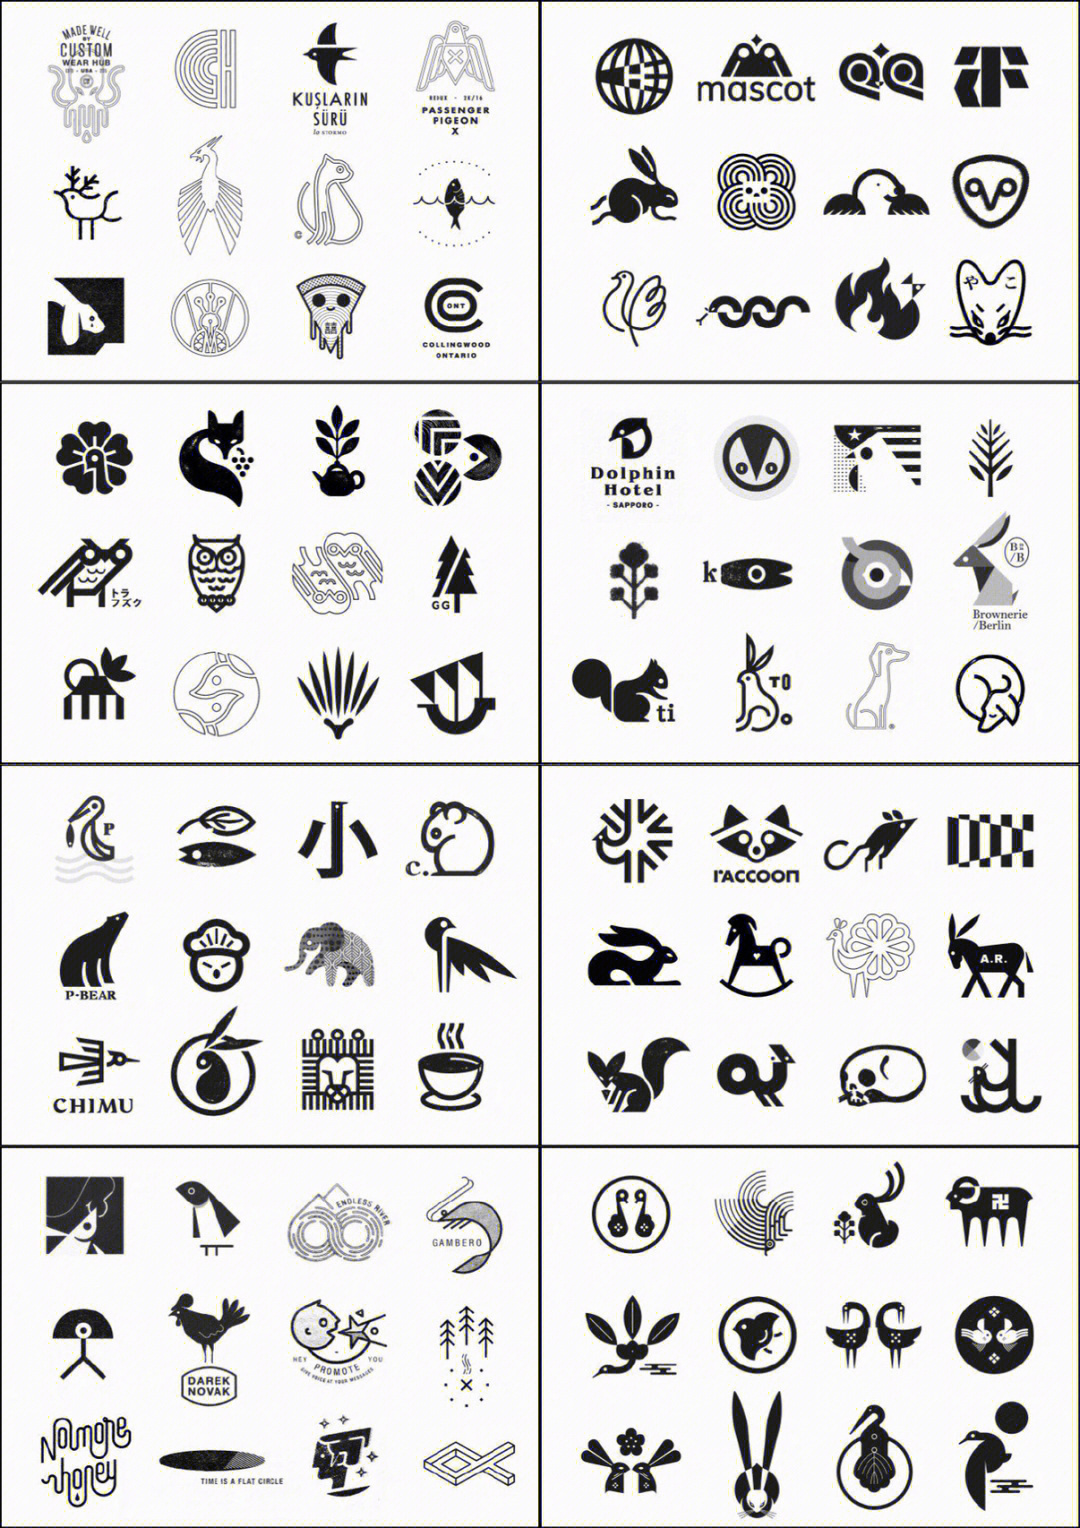 上百款的logo图形设计案例参考合集分享